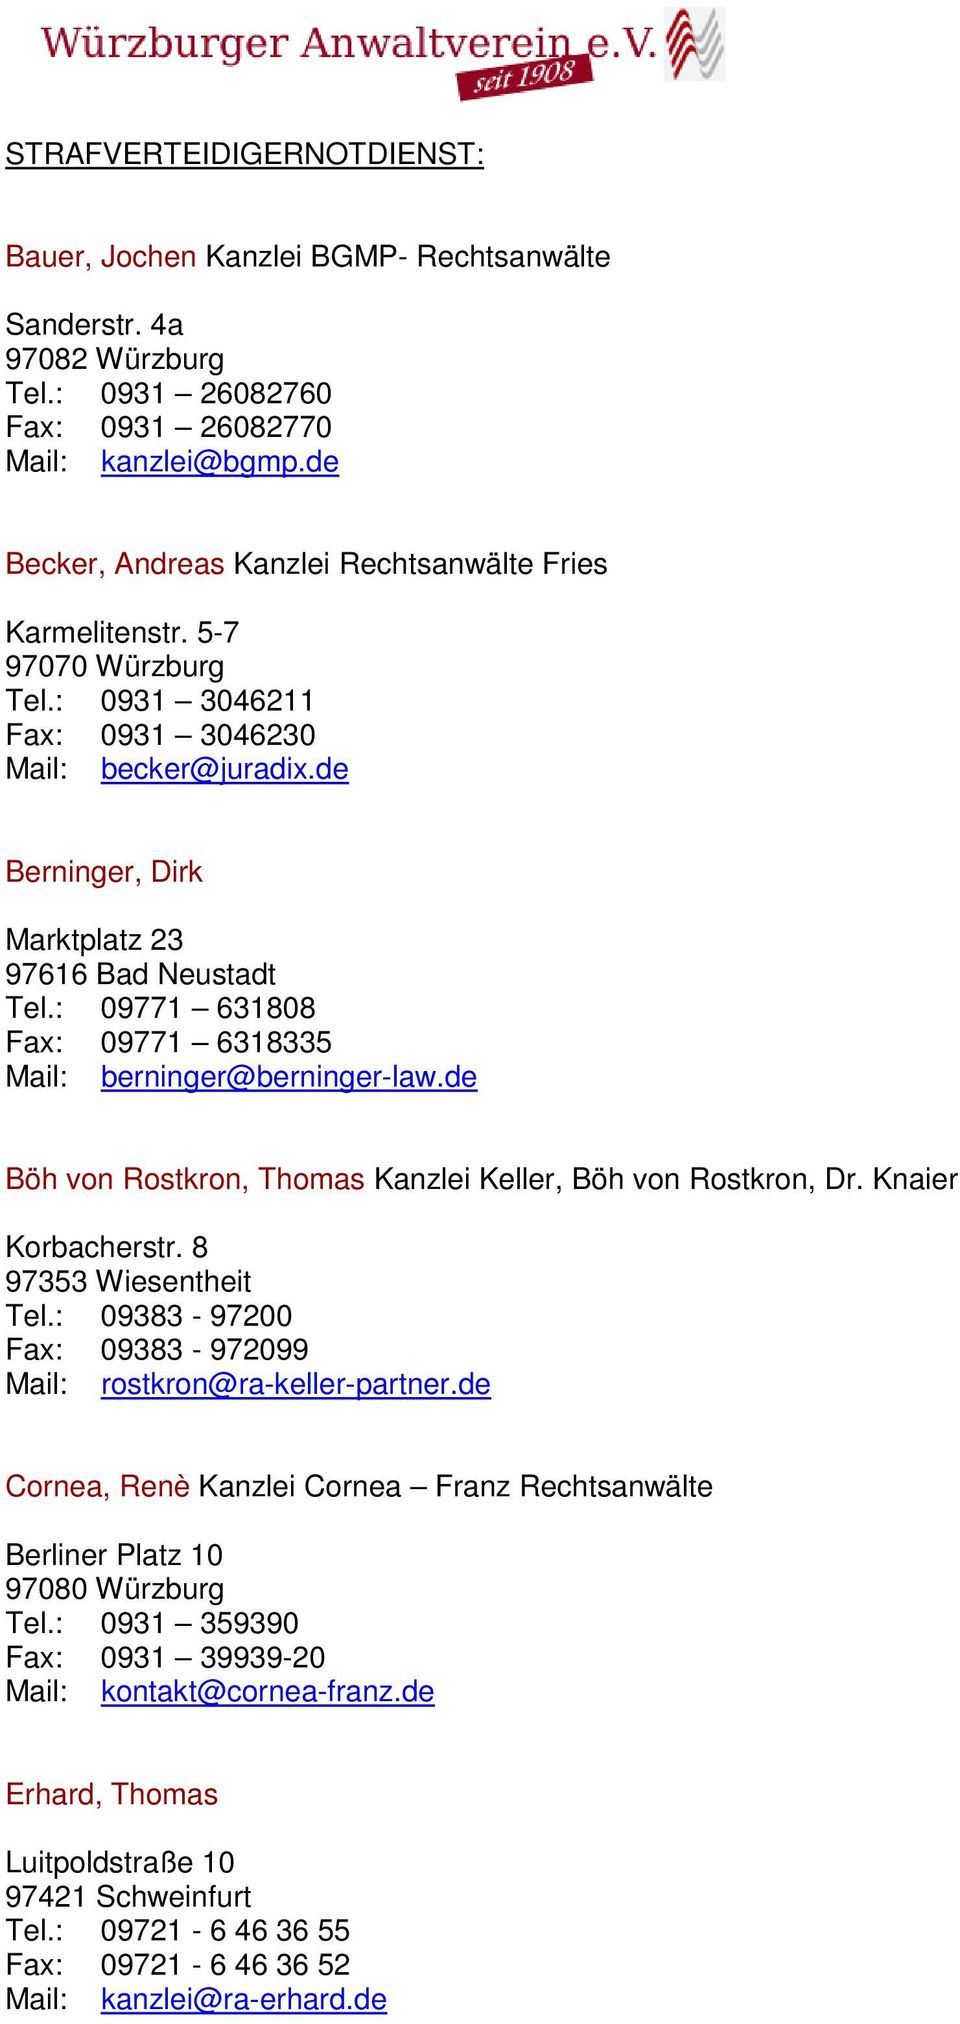 : 09771 631808 Fax: 09771 6318335 Mail: berninger@berninger-law.de Böh von Rostkron, Thomas Kanzlei Keller, Böh von Rostkron, Dr. Knaier Korbacherstr. 8 97353 Wiesentheit Tel.